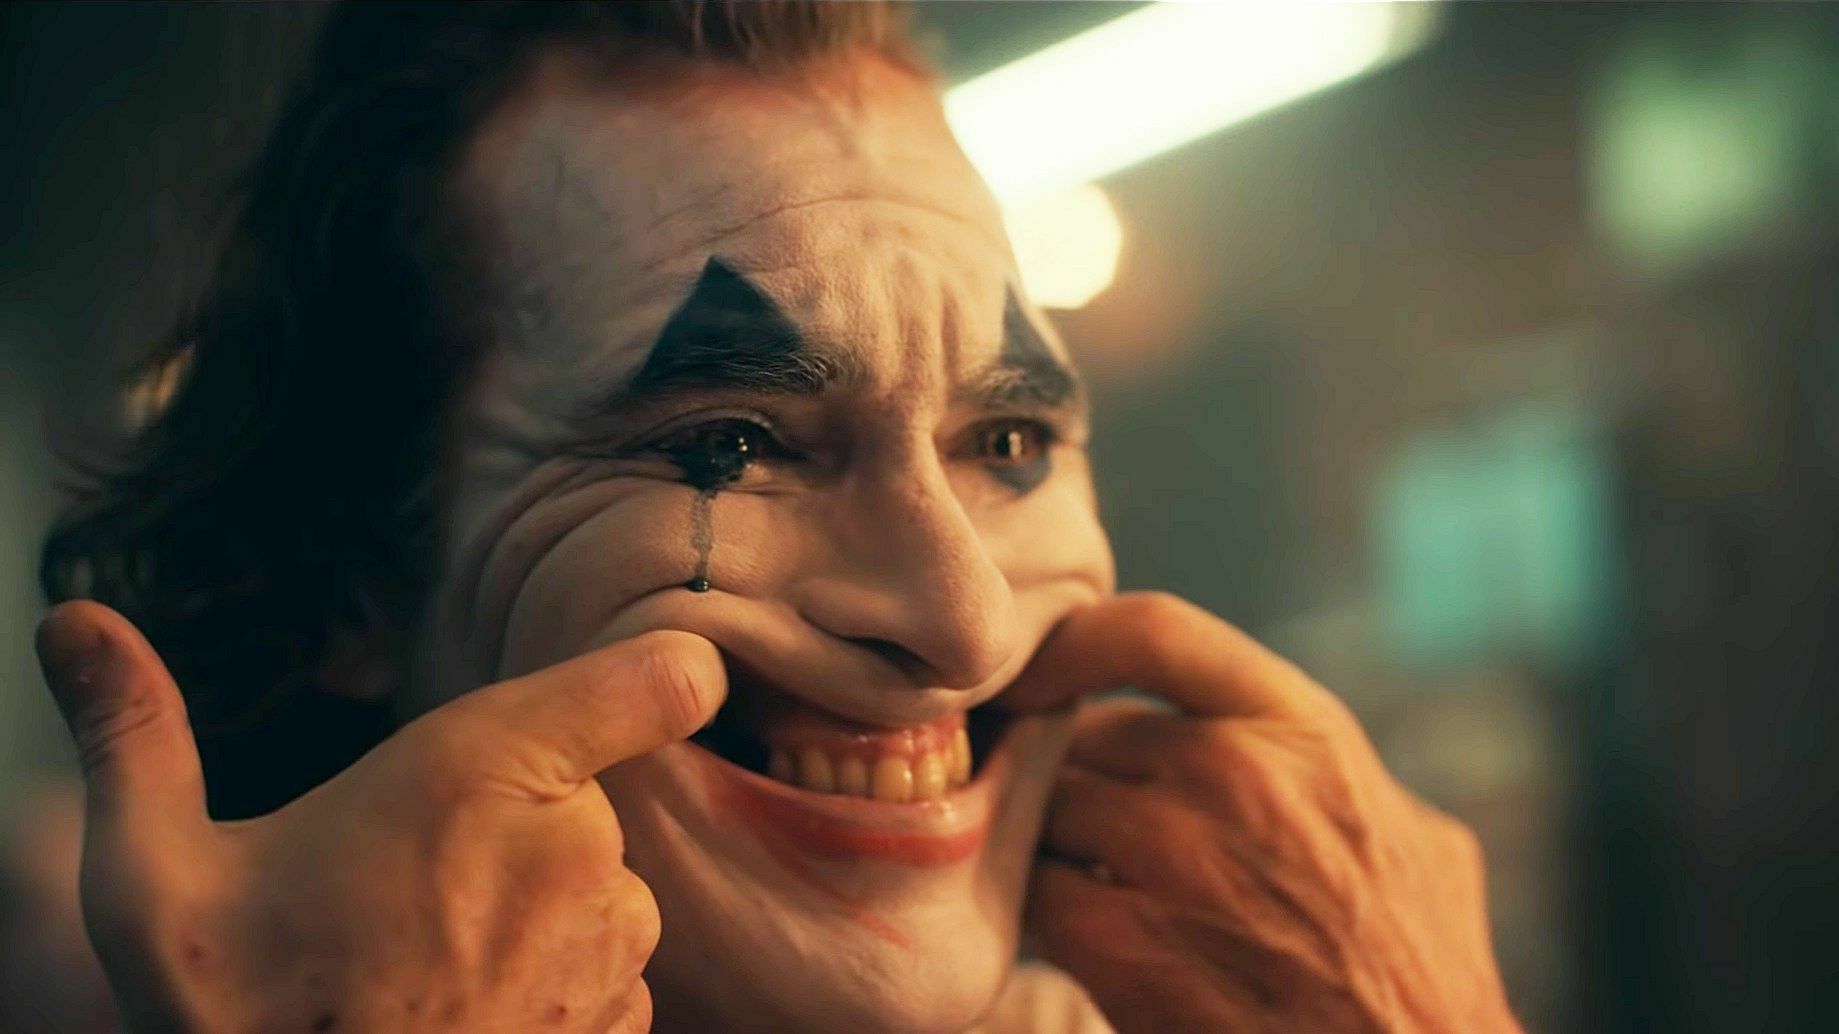 Американские кинотеатры запрещают маски и костюмы на показах фильма "Джокер"